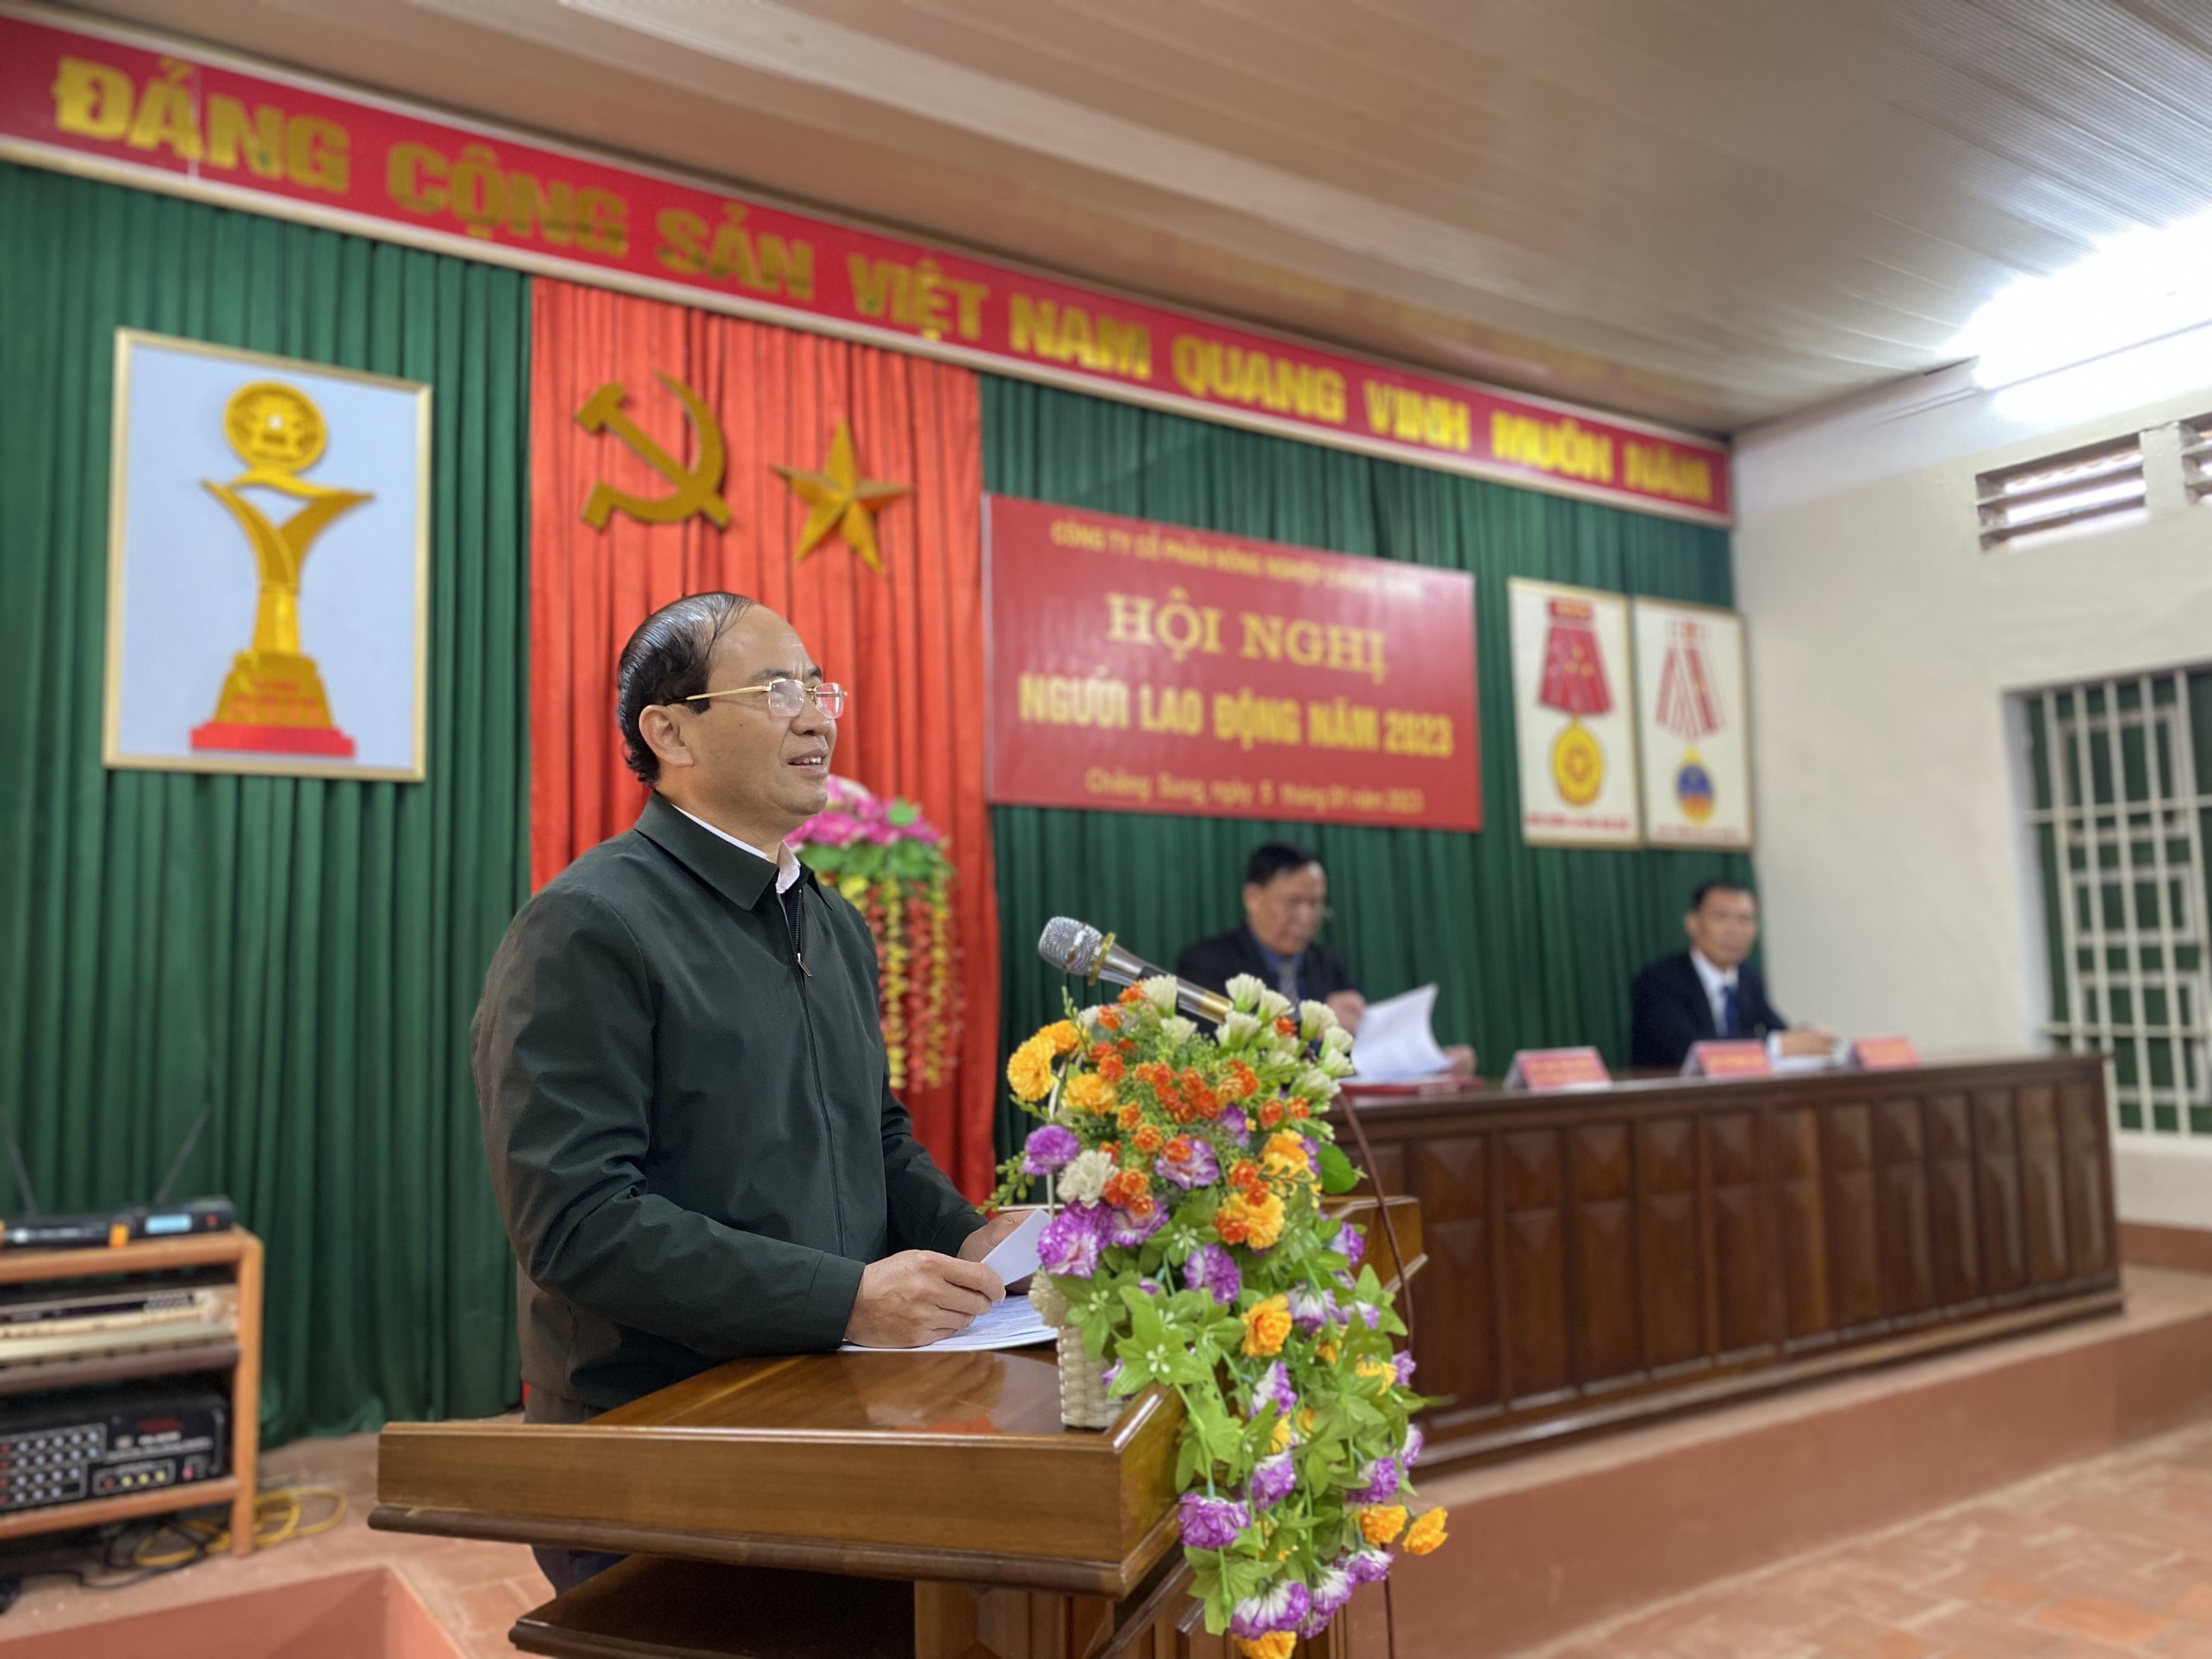 Đồng chí Nguyễn Quốc Khánh, Chủ tịch Hiệp hội doanh nghiệp tỉnh Sơn La phát biểu tại Hội nghị